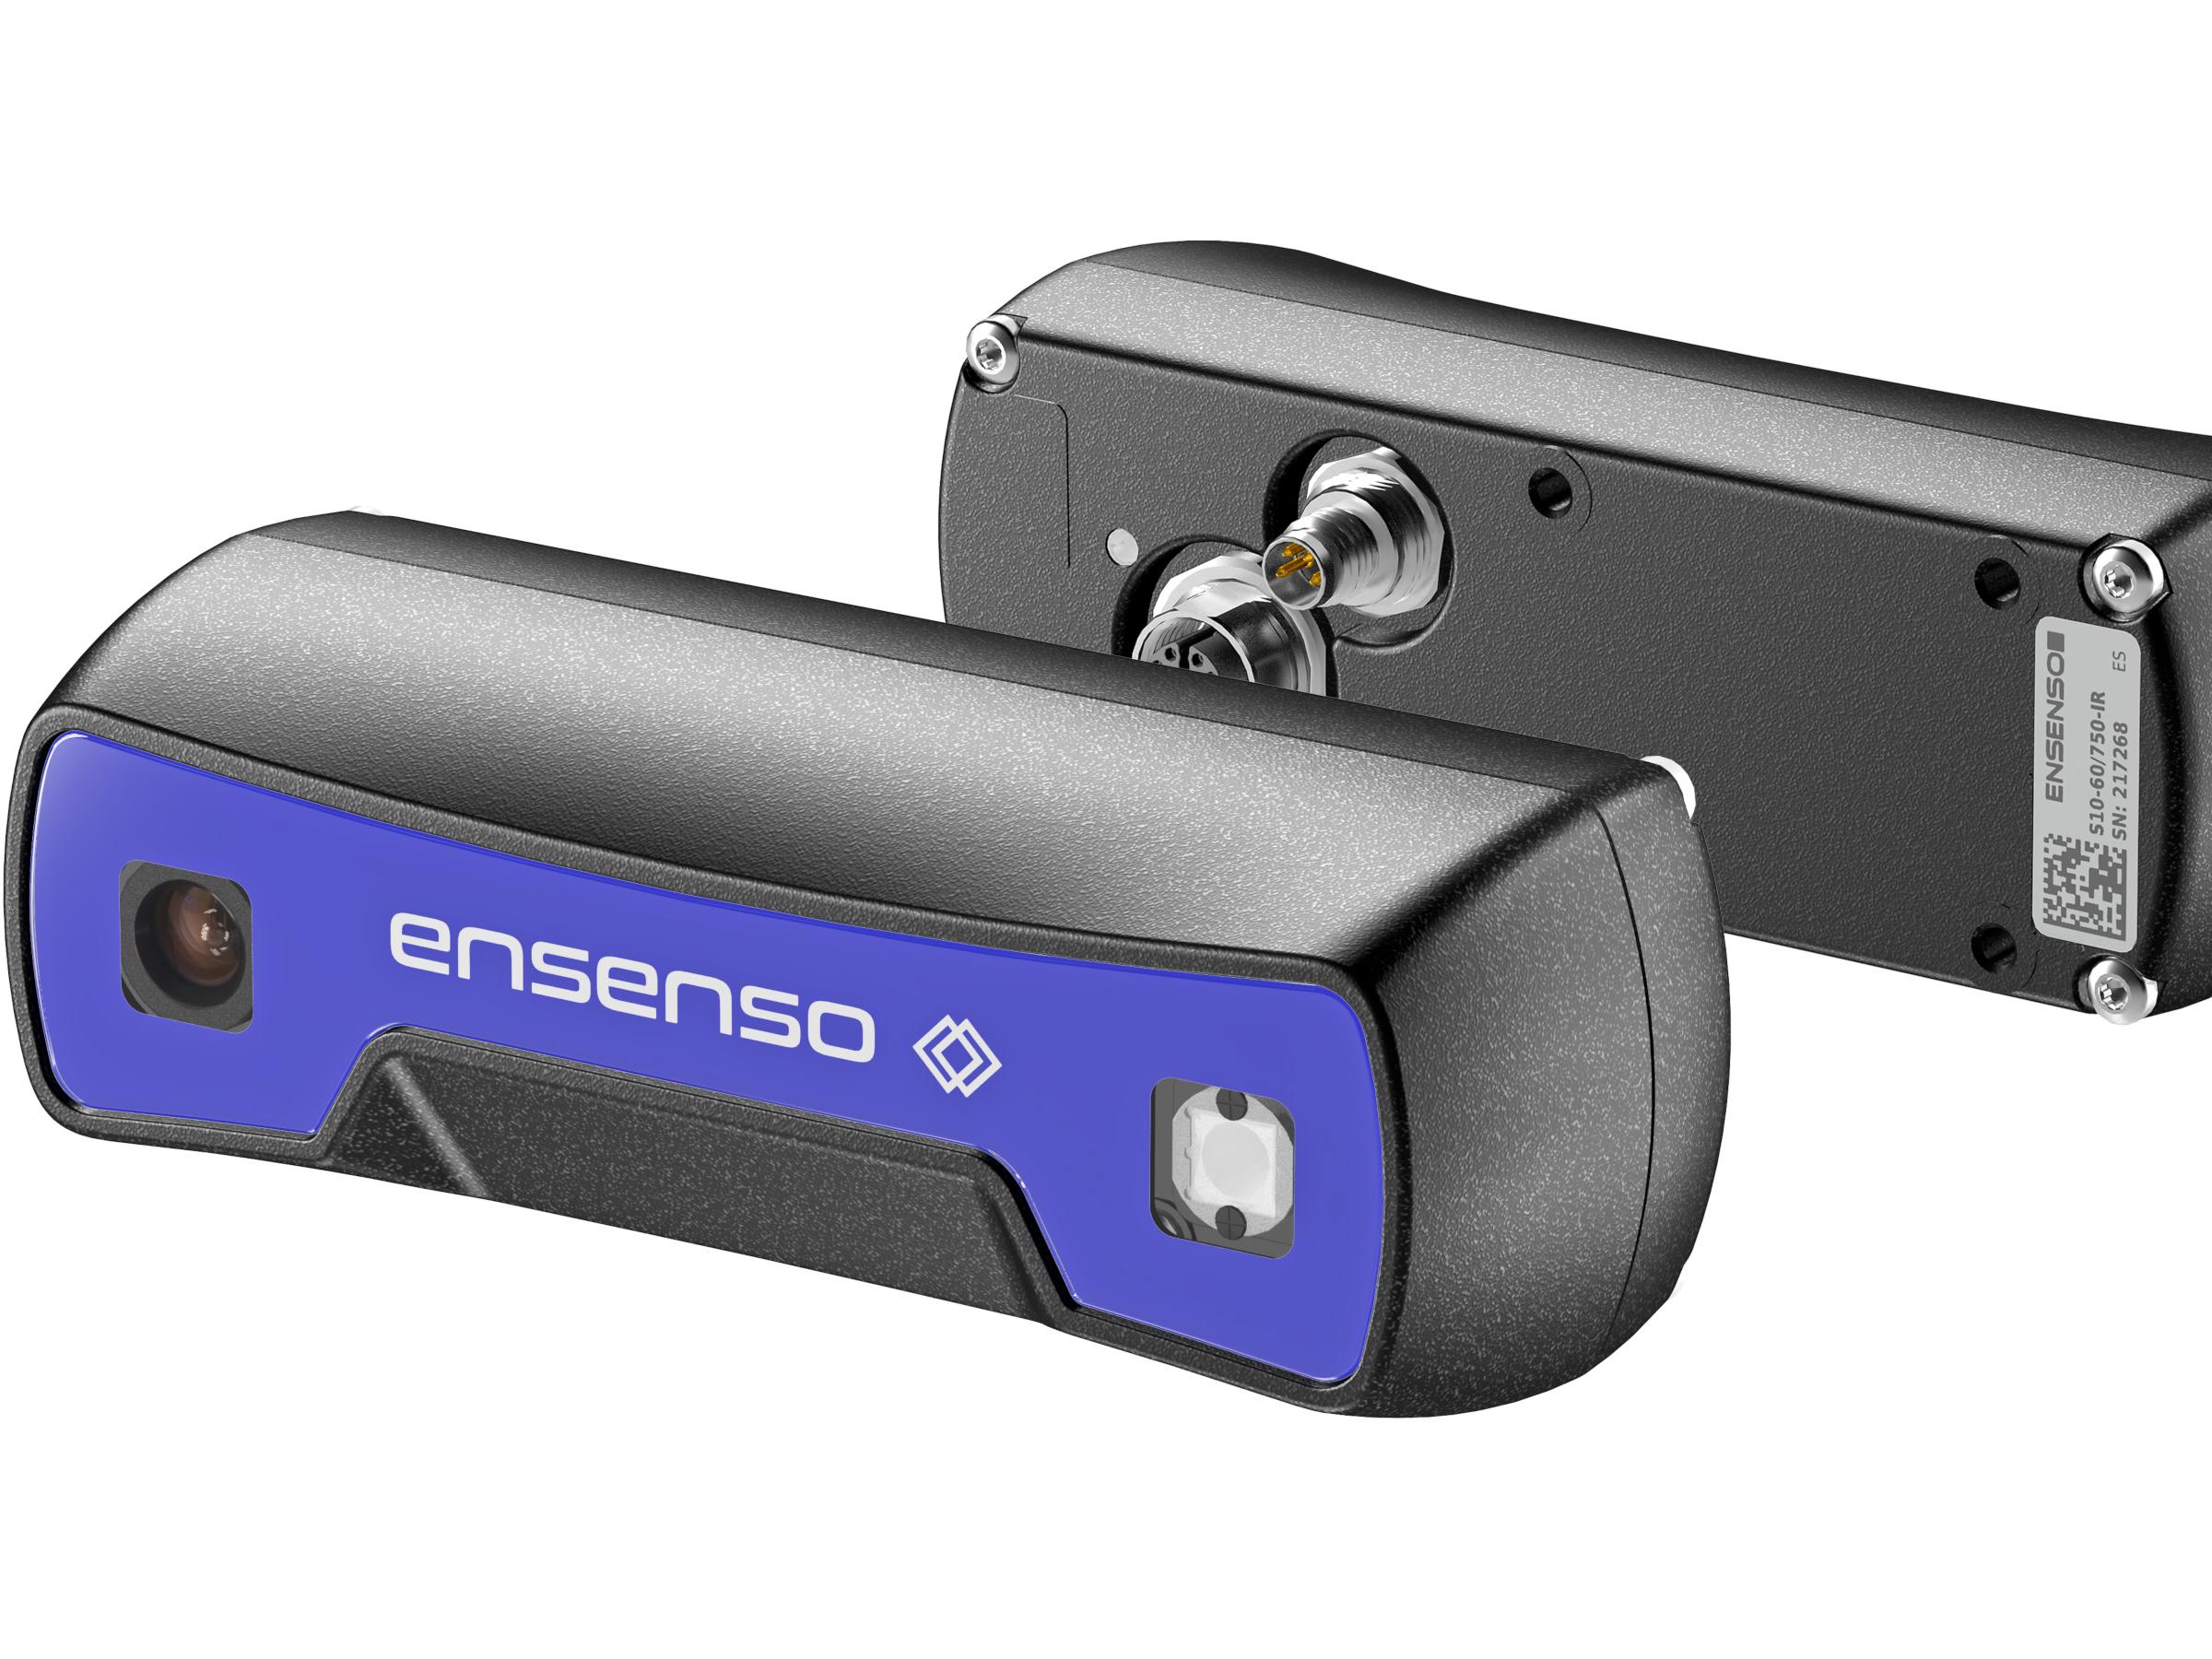 IDS expands Ensenso 3D camera portfolio